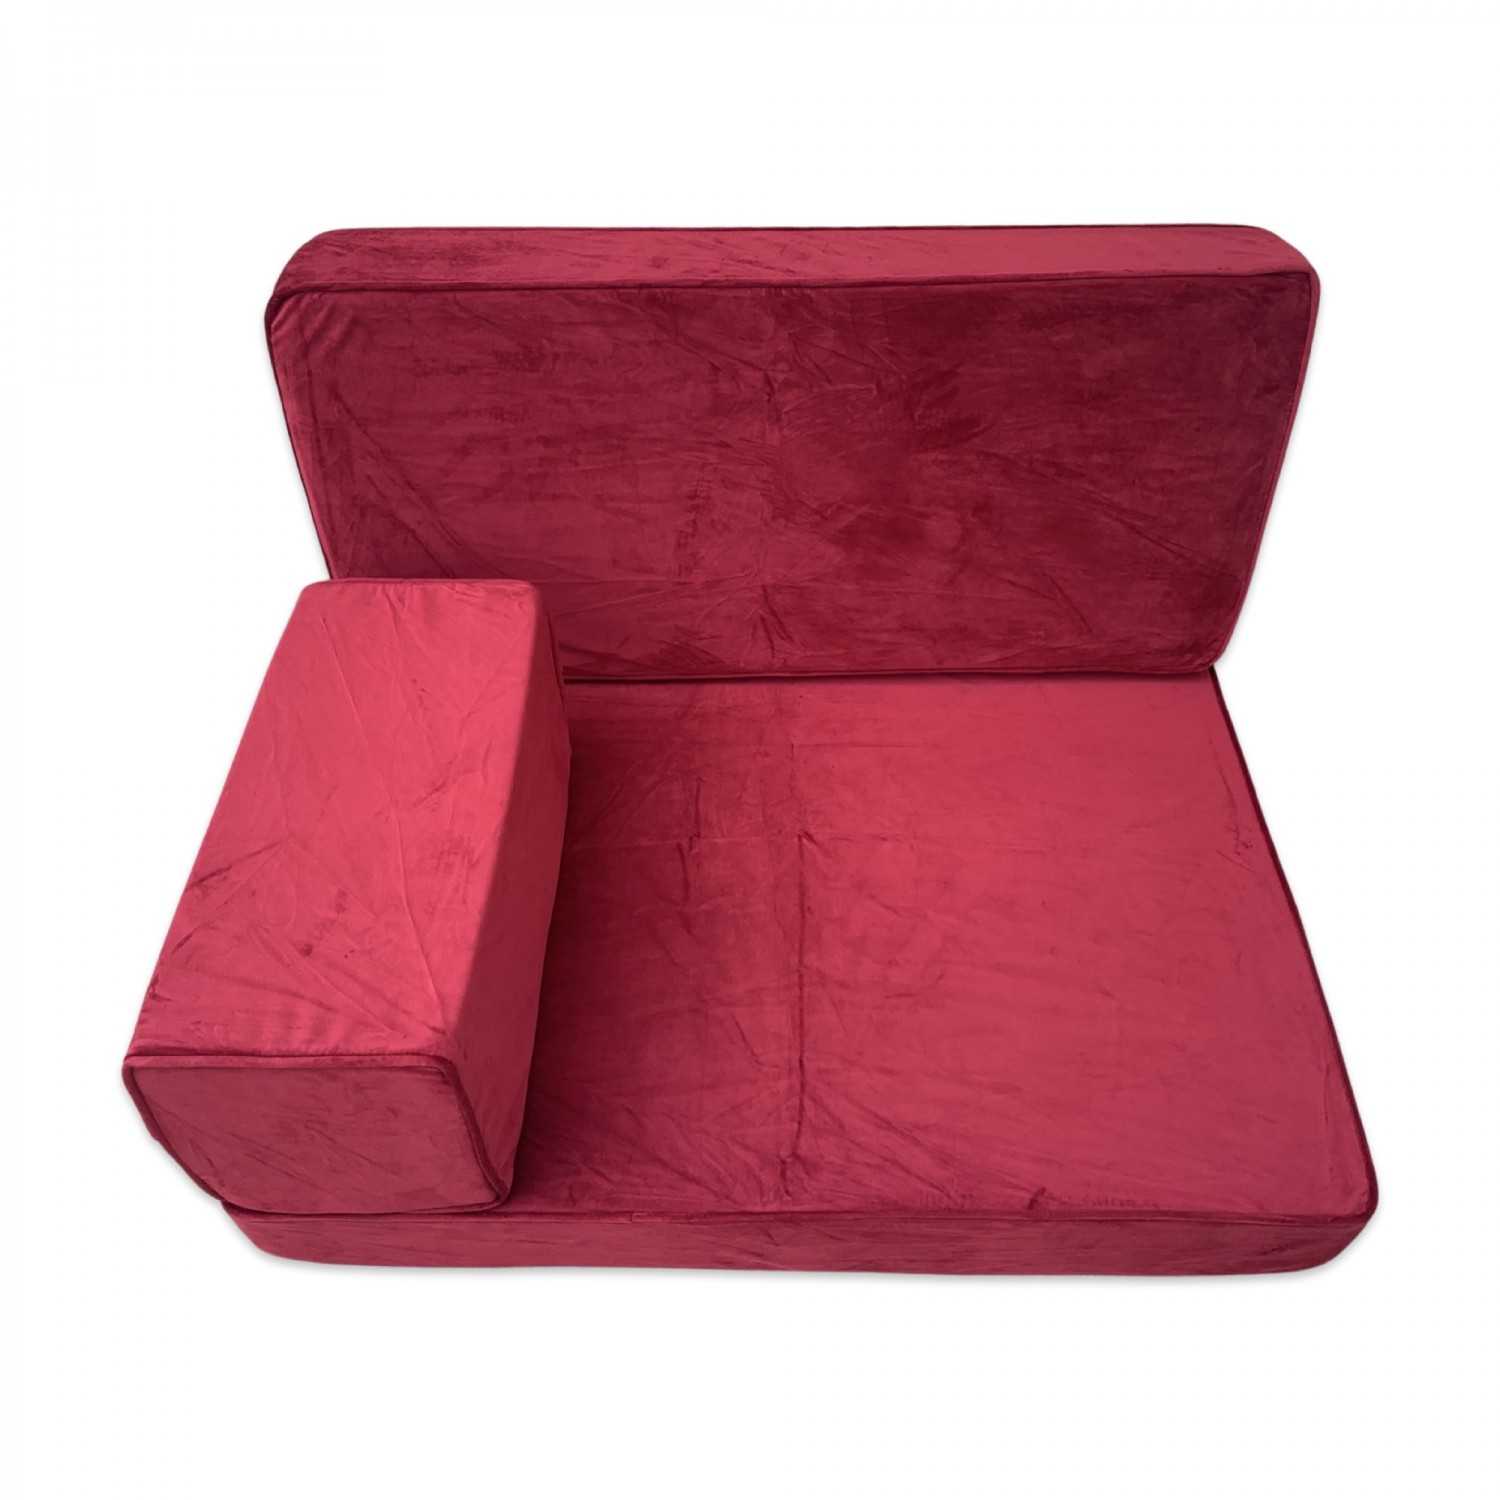 Handmade velvet bench cushions, Reading floor cushions